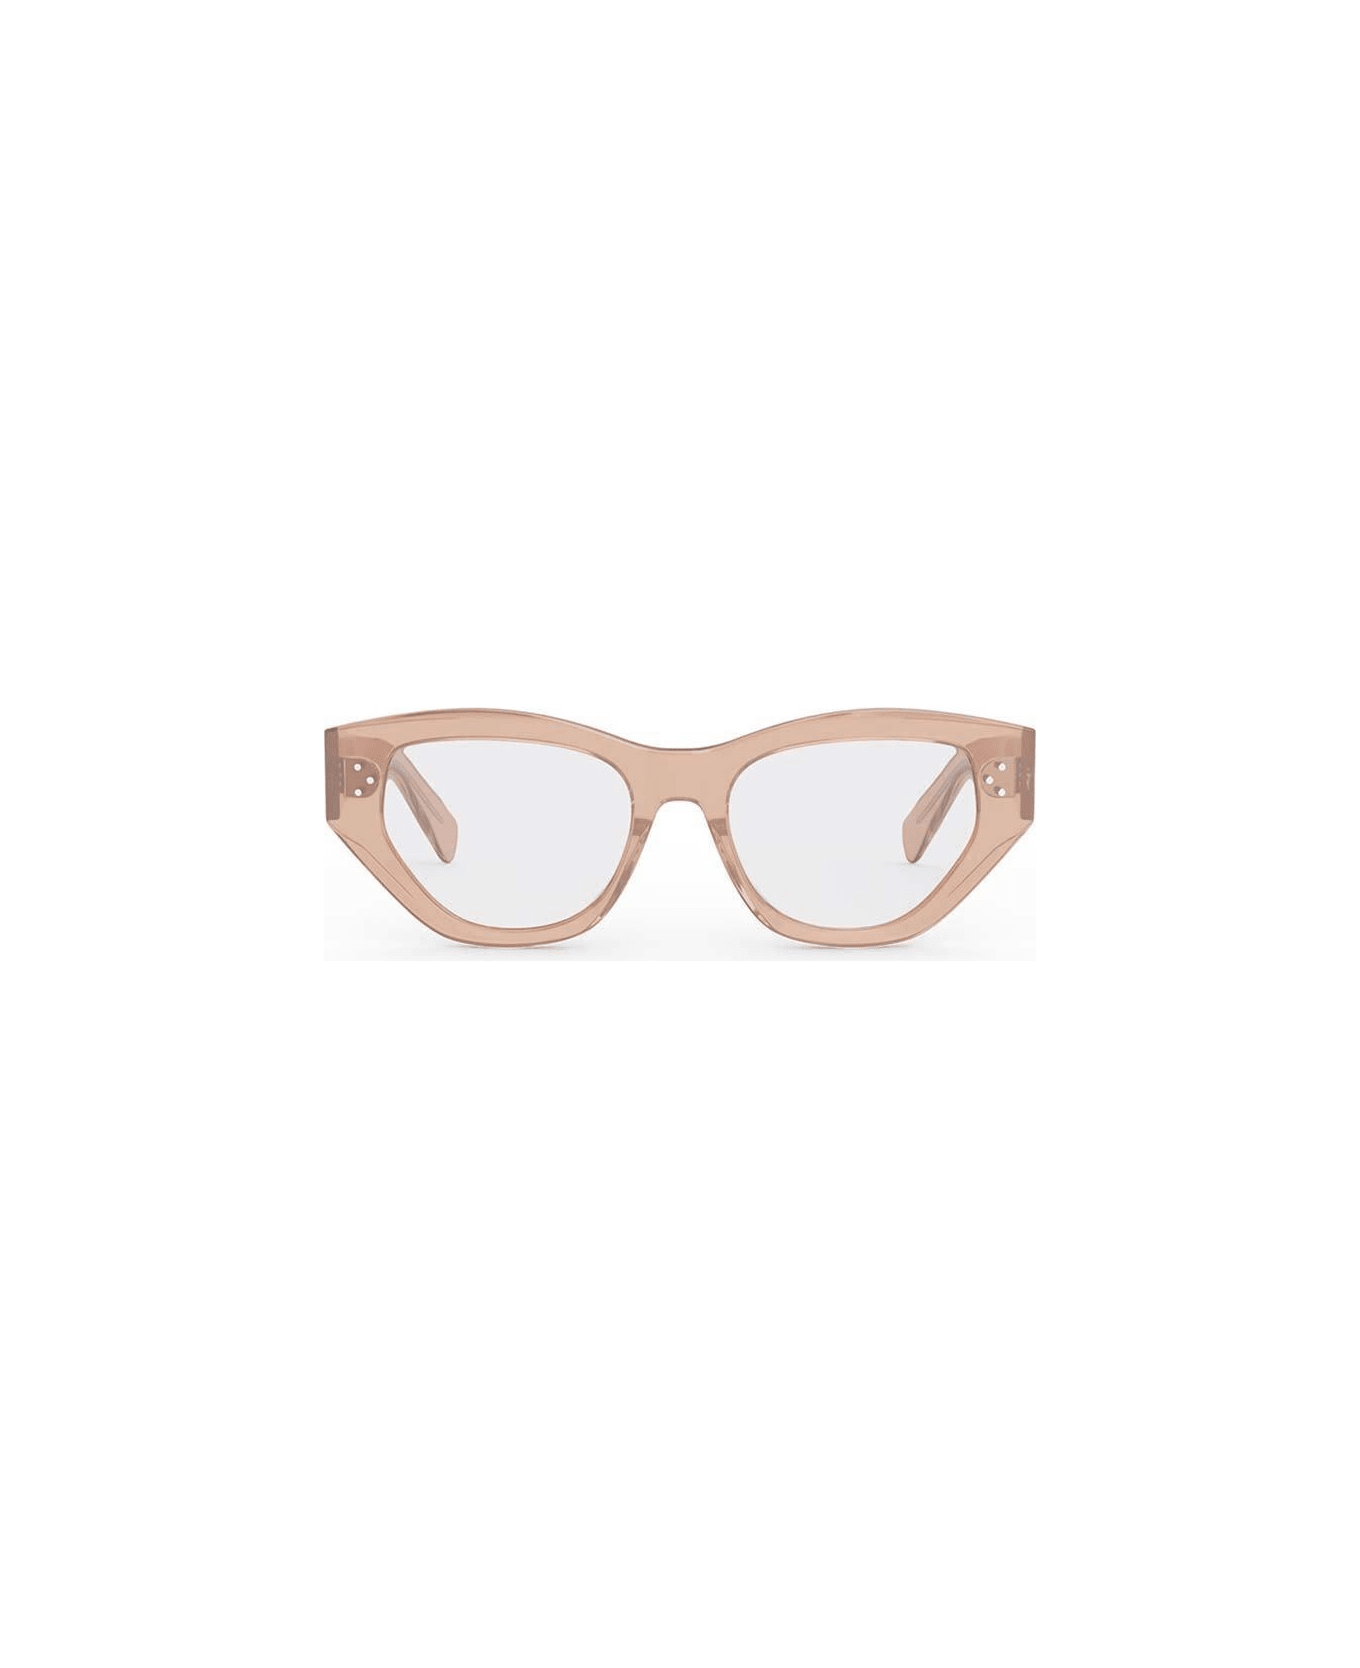 Celine Cat-eye Framed Glasses - 072 アイウェア